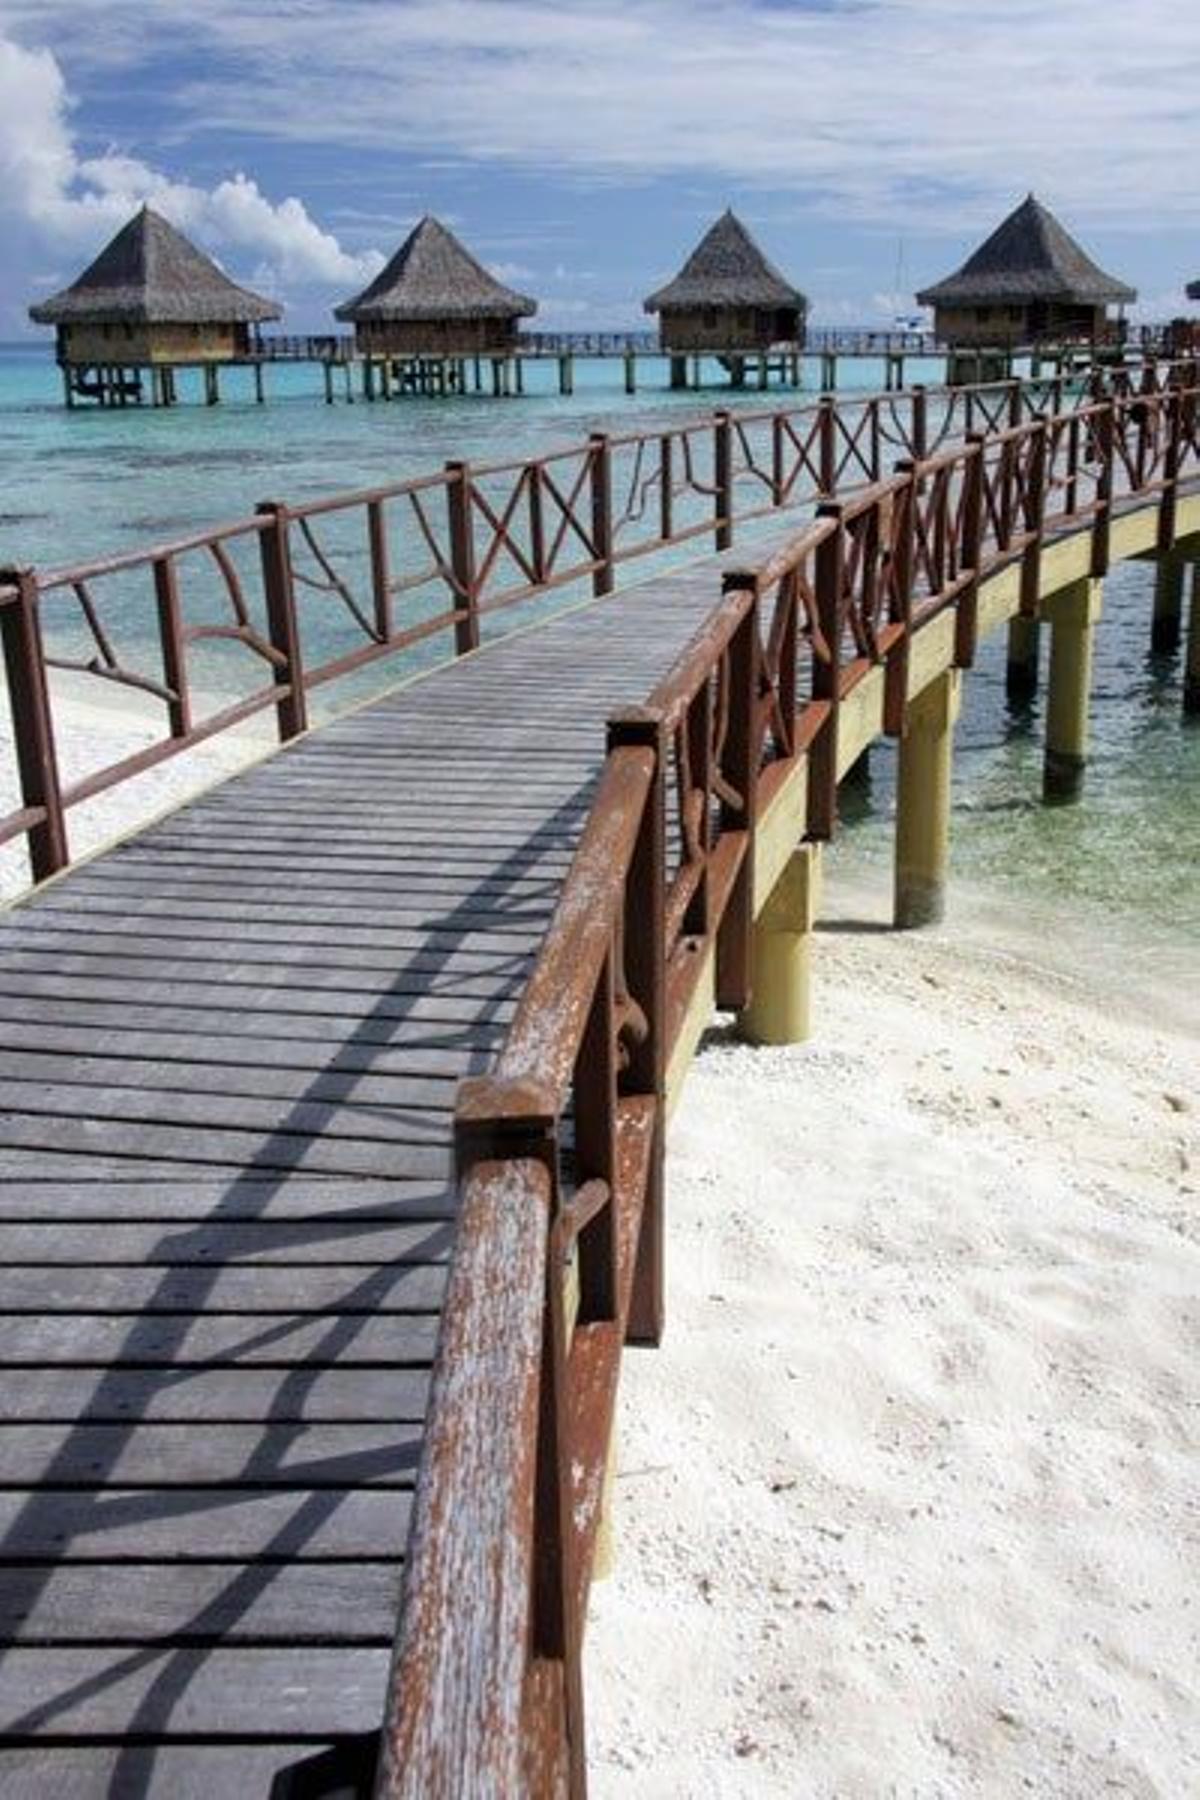 Pasarela de acceso a las cabañas sobre la laguna del atolón.